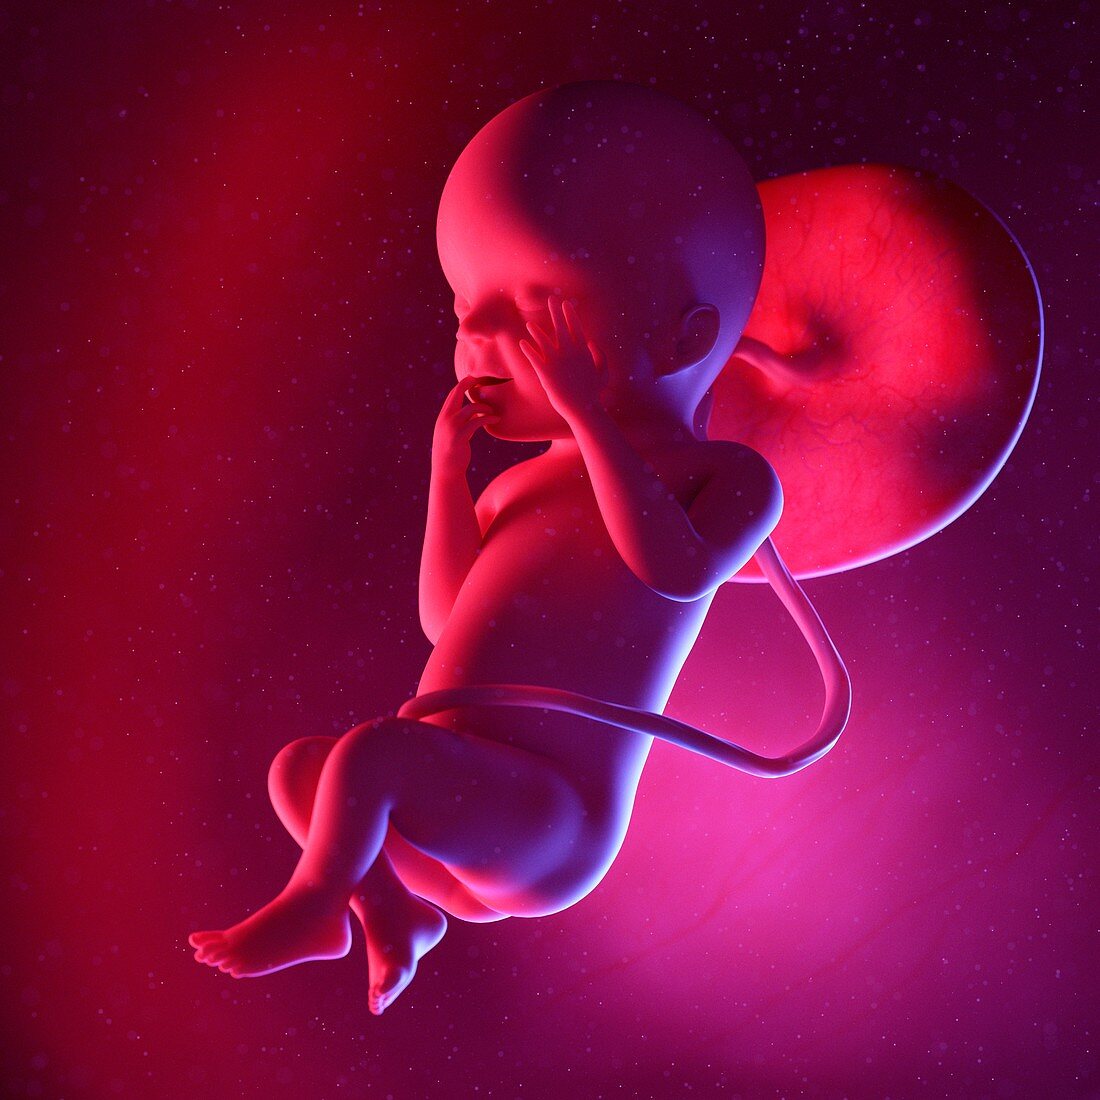 Fetus at week 23, illustration